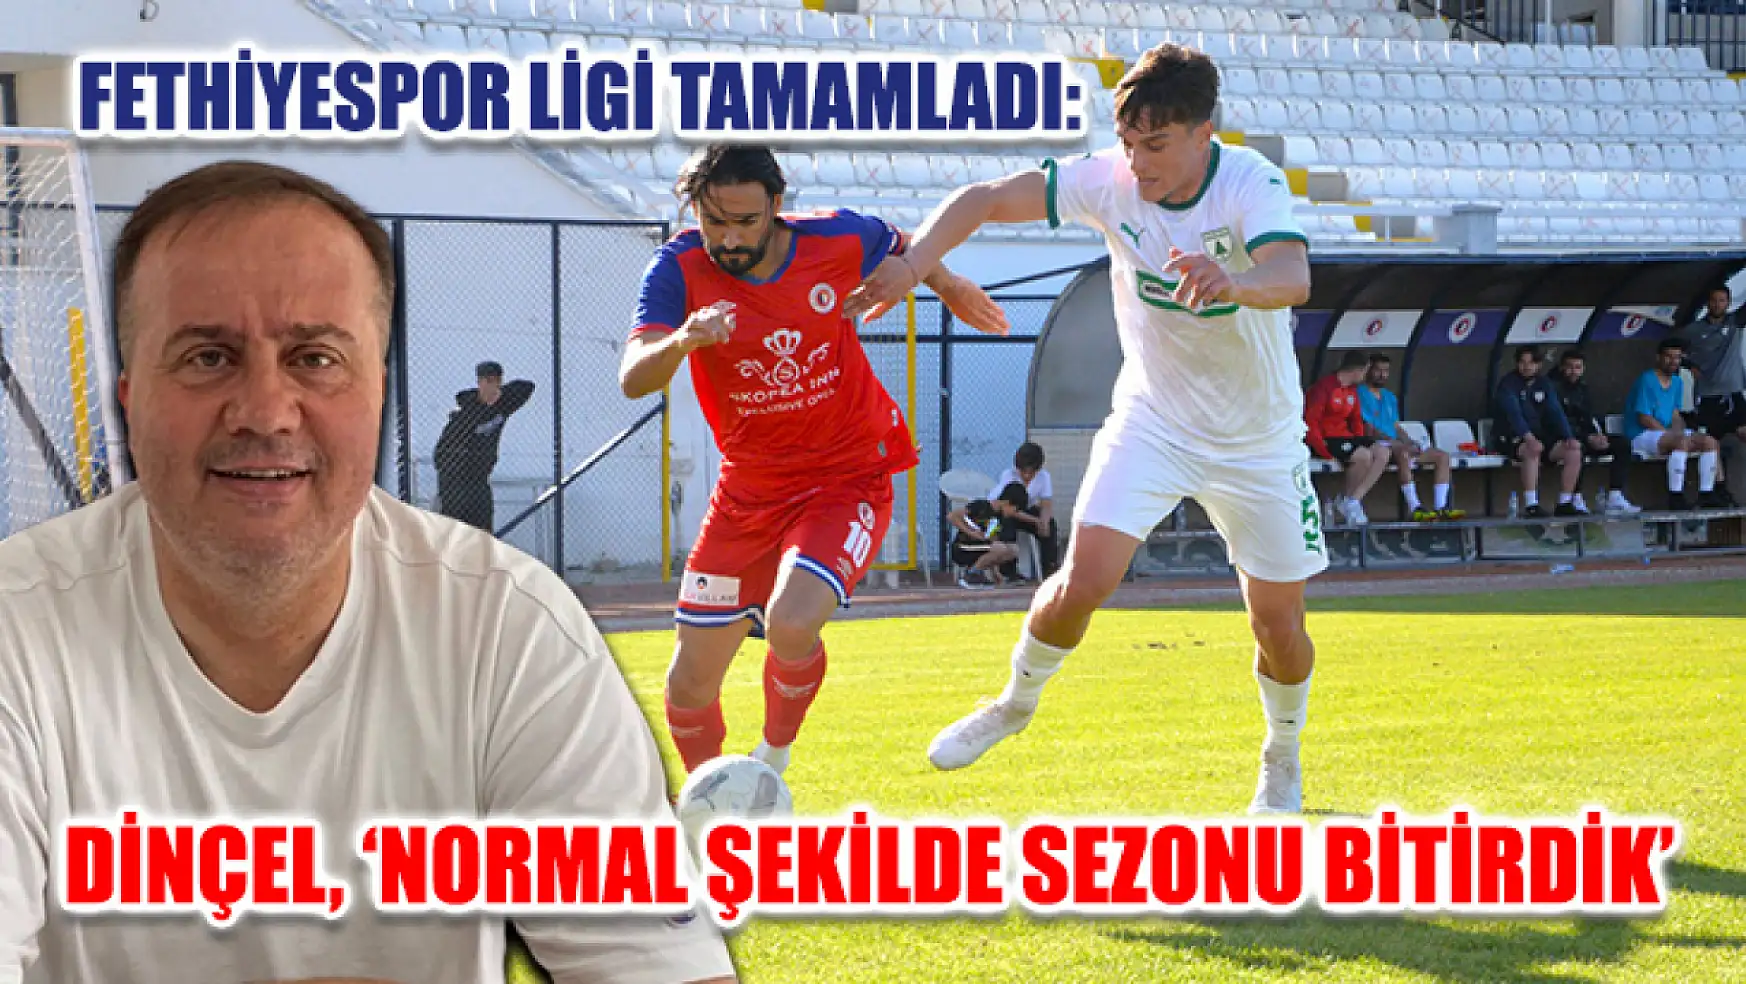 Fethiyespor ligi tamamladı: Dinçel, 'Normal şekilde sezonu bitirdik'